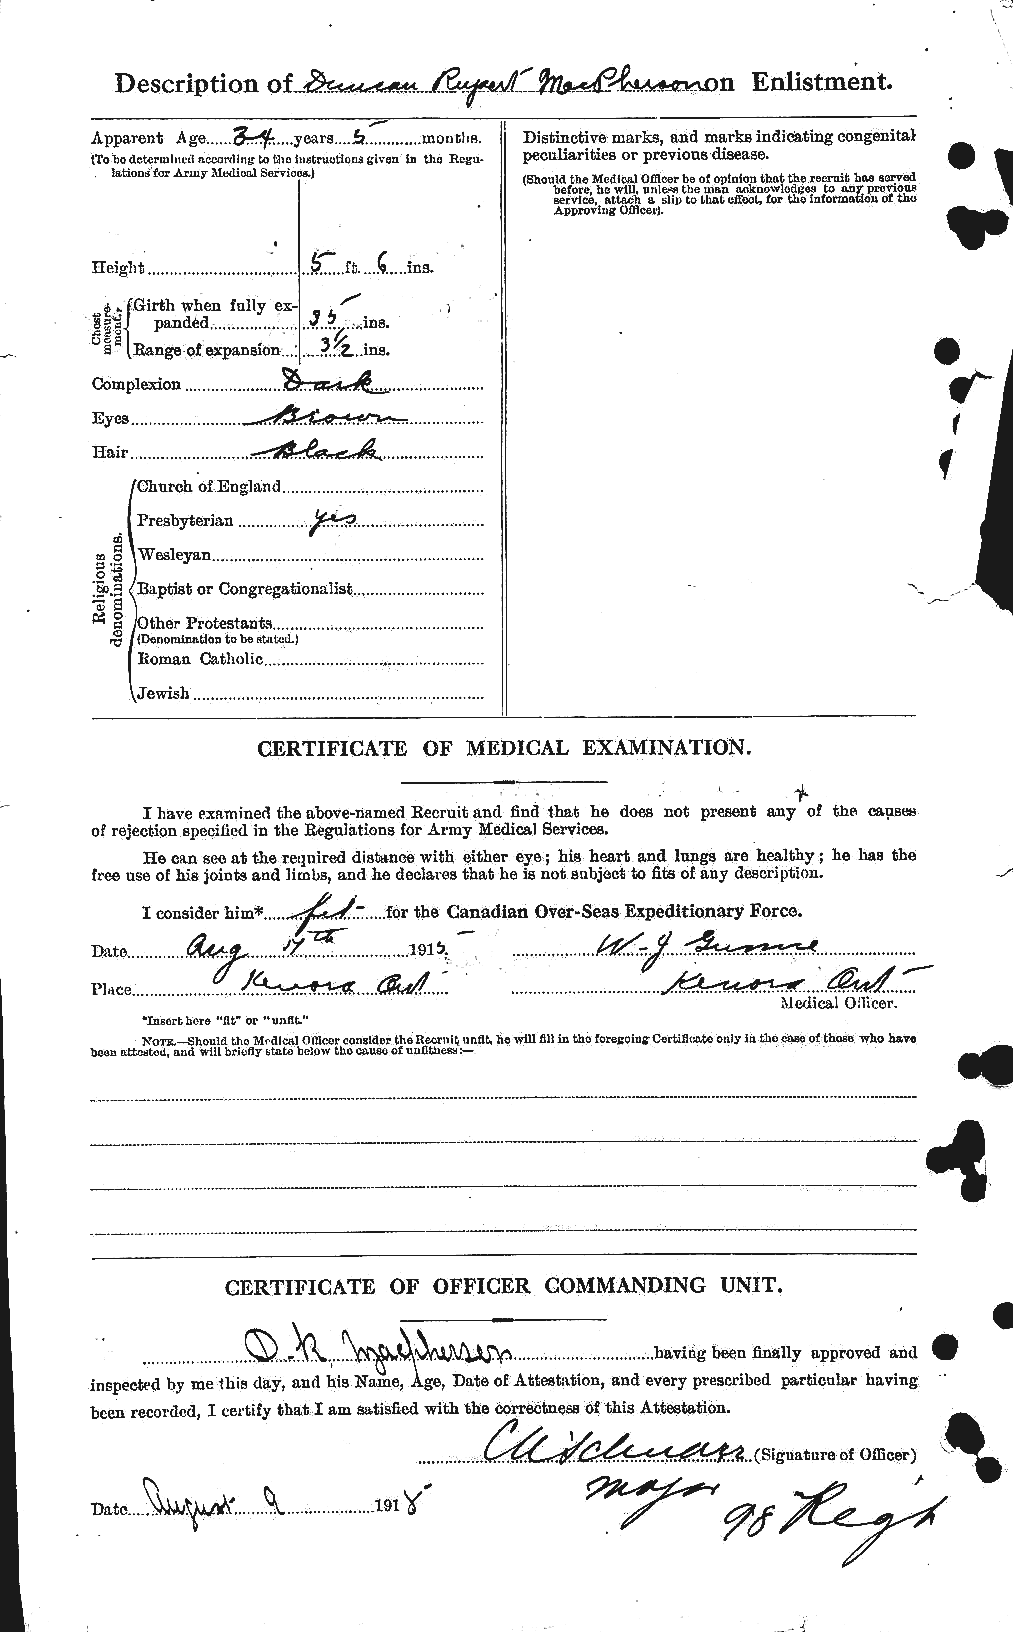 Dossiers du Personnel de la Première Guerre mondiale - CEC 541517b